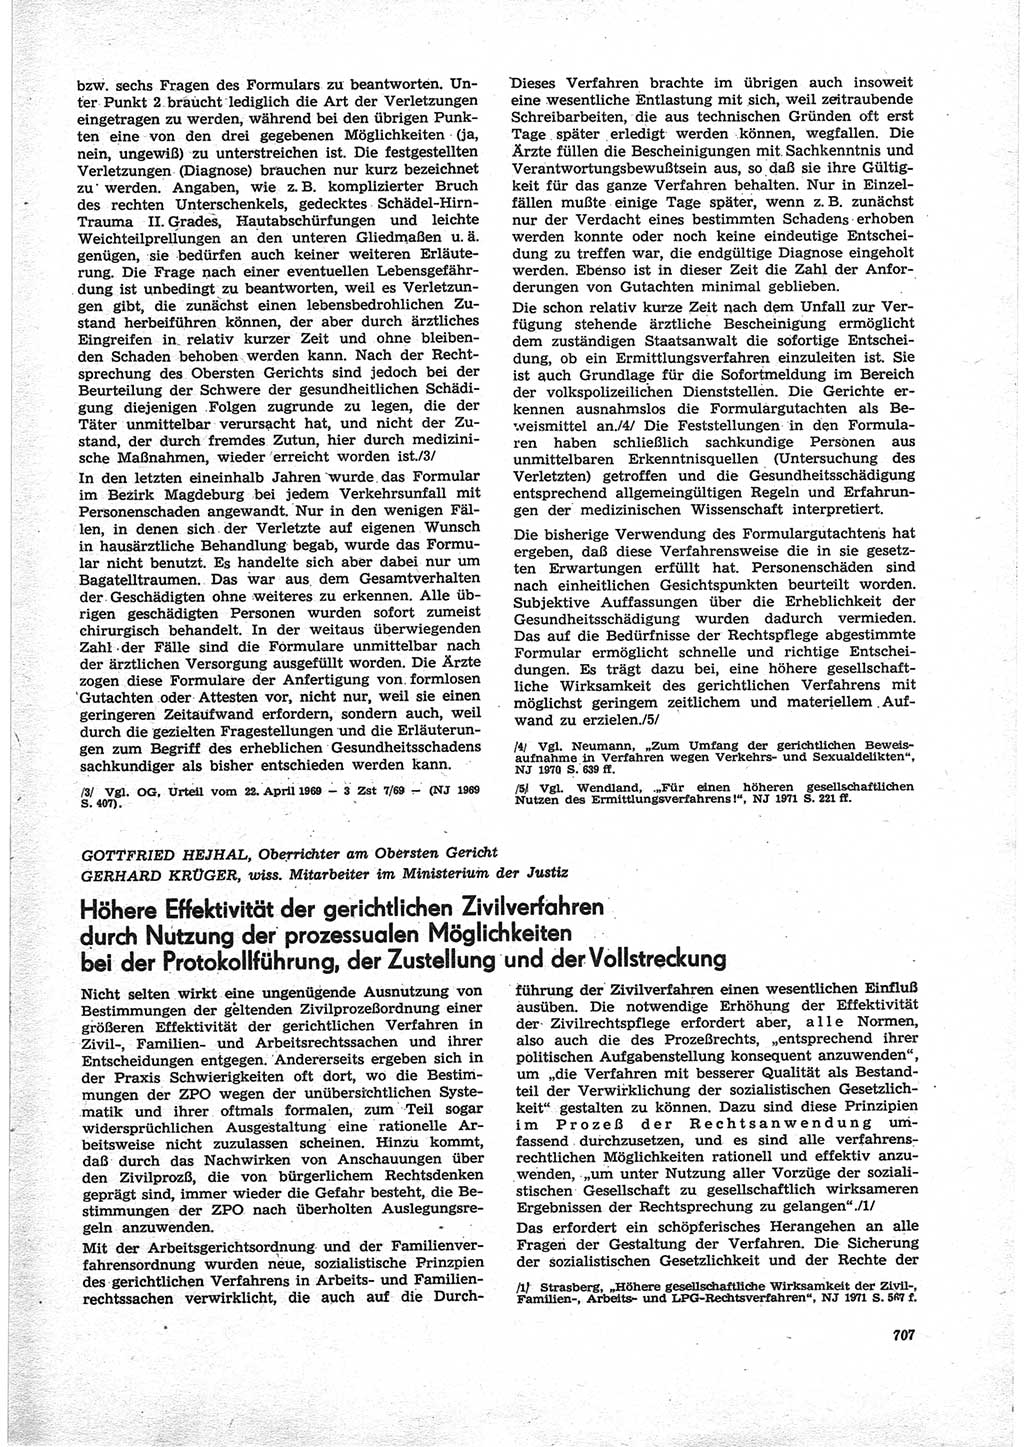 Neue Justiz (NJ), Zeitschrift für Recht und Rechtswissenschaft [Deutsche Demokratische Republik (DDR)], 25. Jahrgang 1971, Seite 707 (NJ DDR 1971, S. 707)